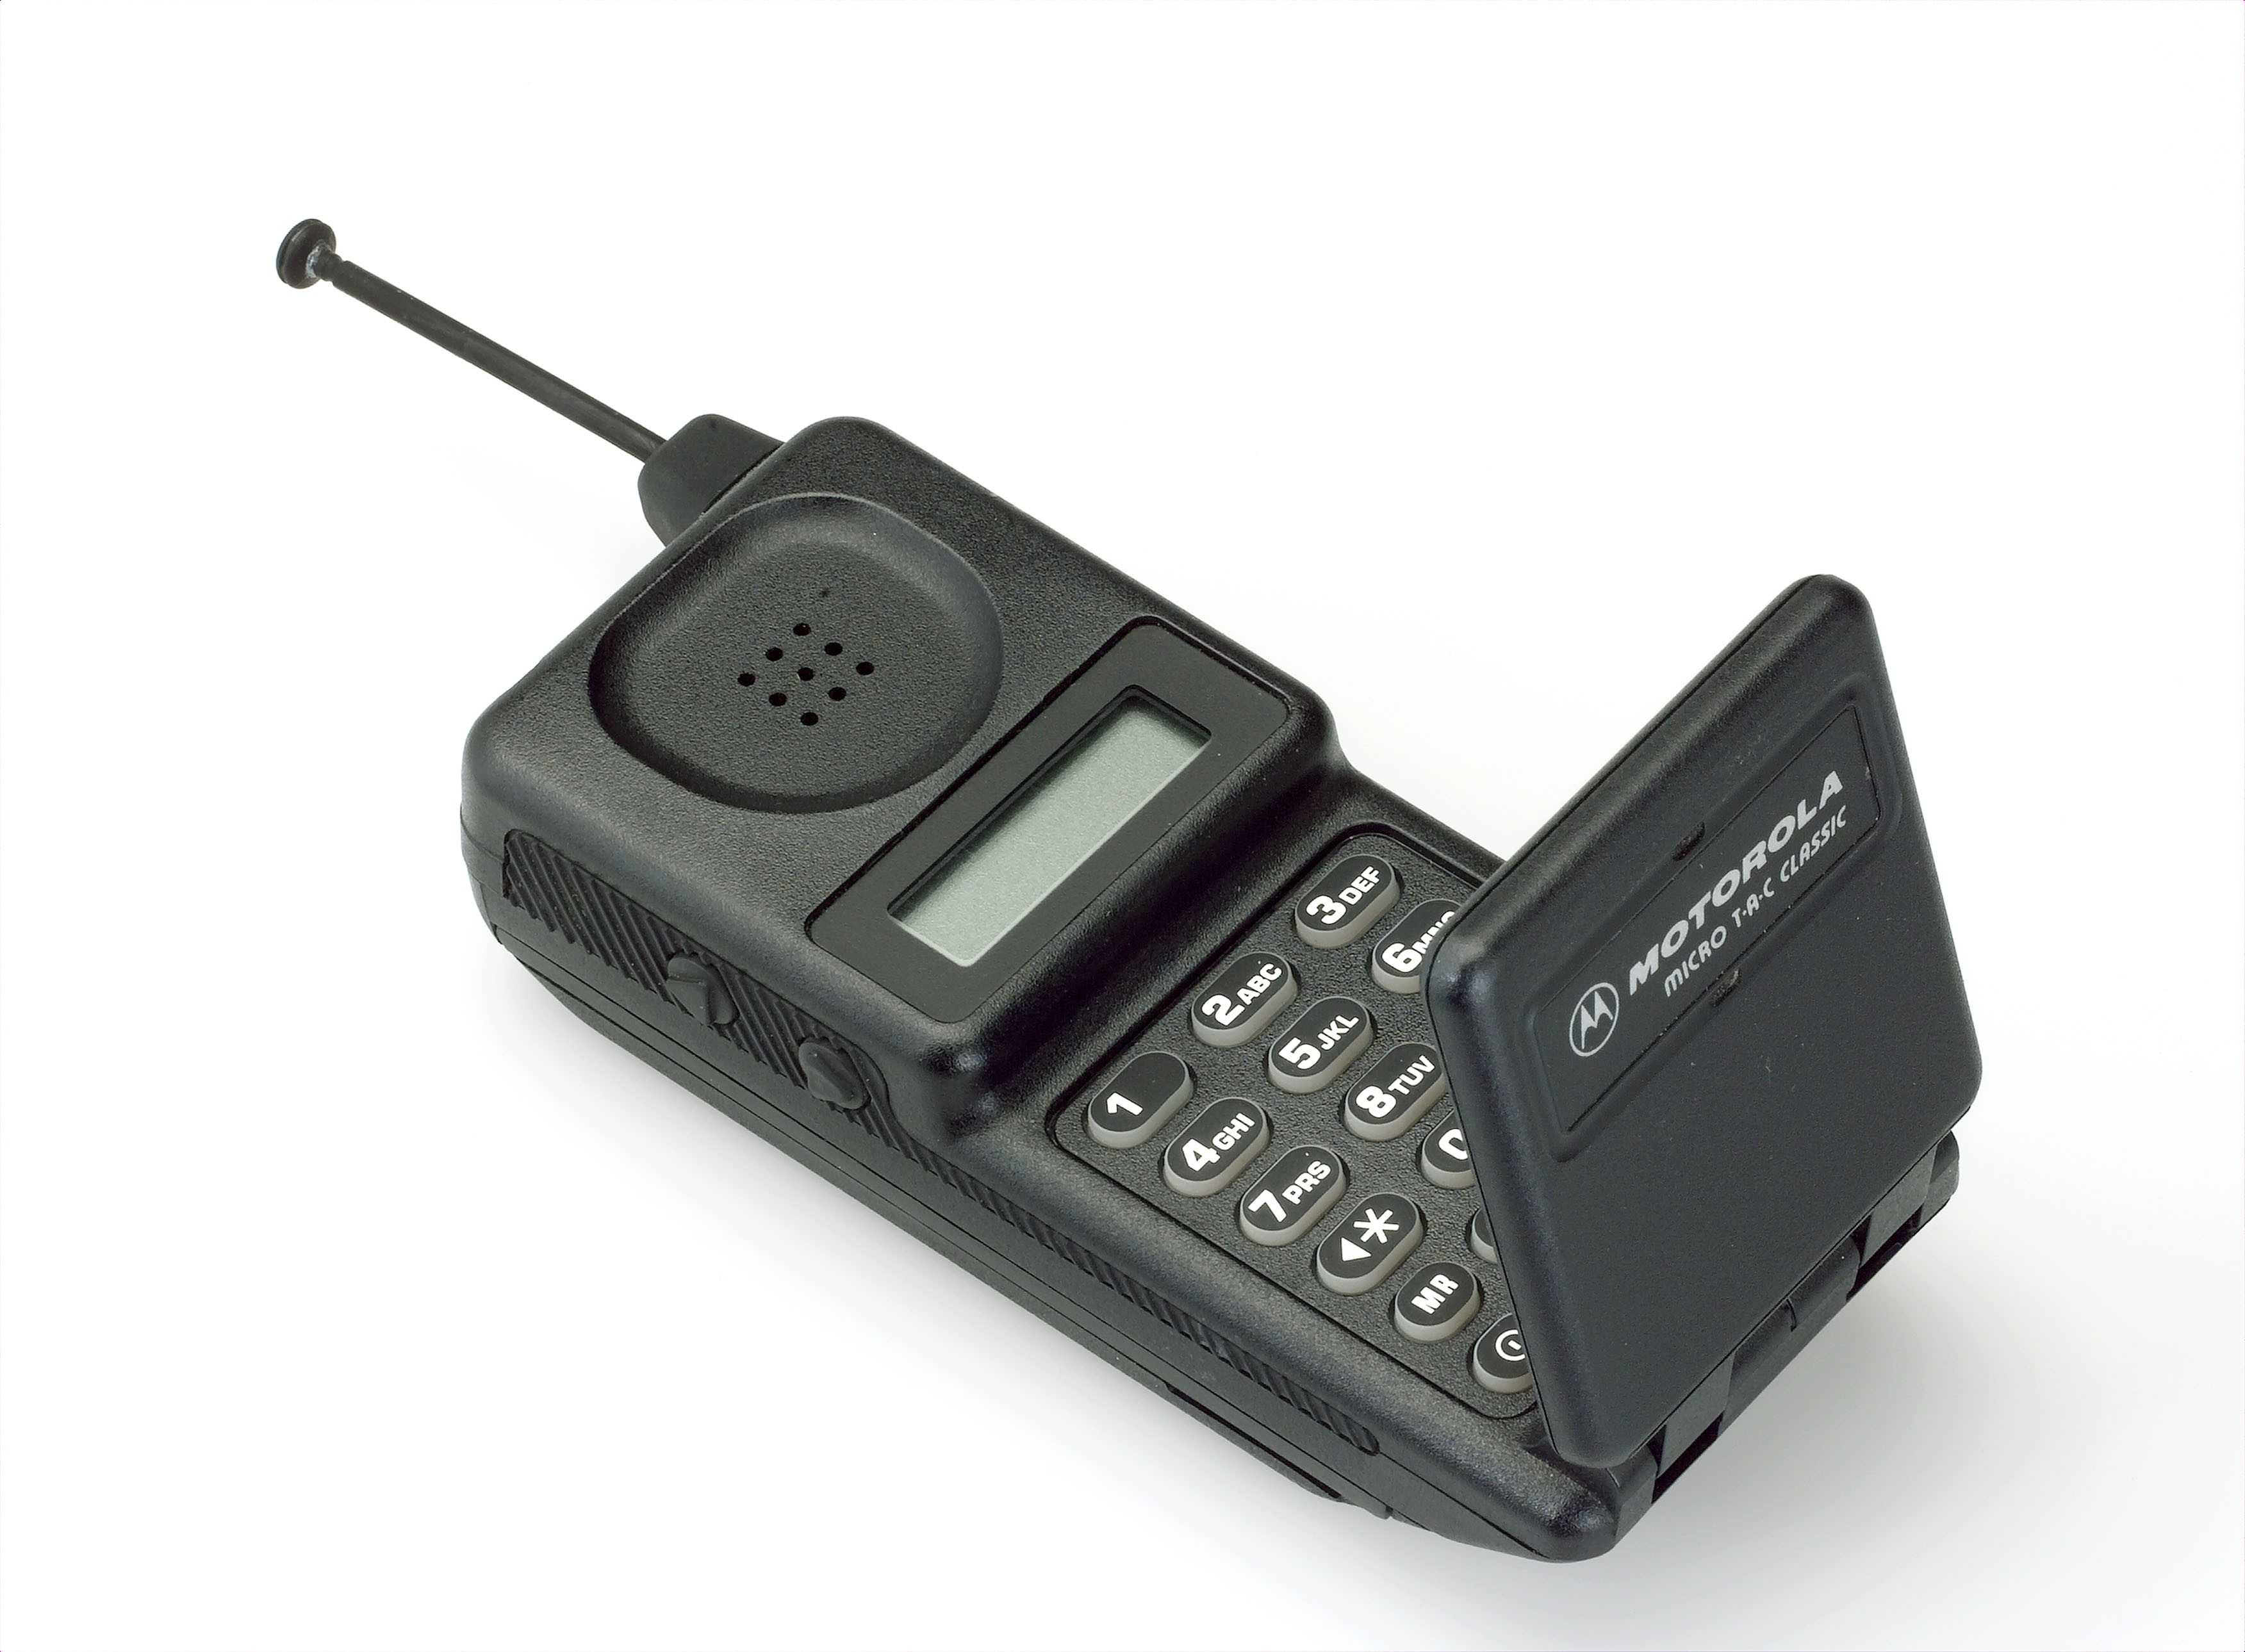 Мобильные телефоны 90. Motorola MICROTAC 9800x. Моторола микротак 9800. Motorola MICROTAC 1989. Motorola MICROTAC Classic.